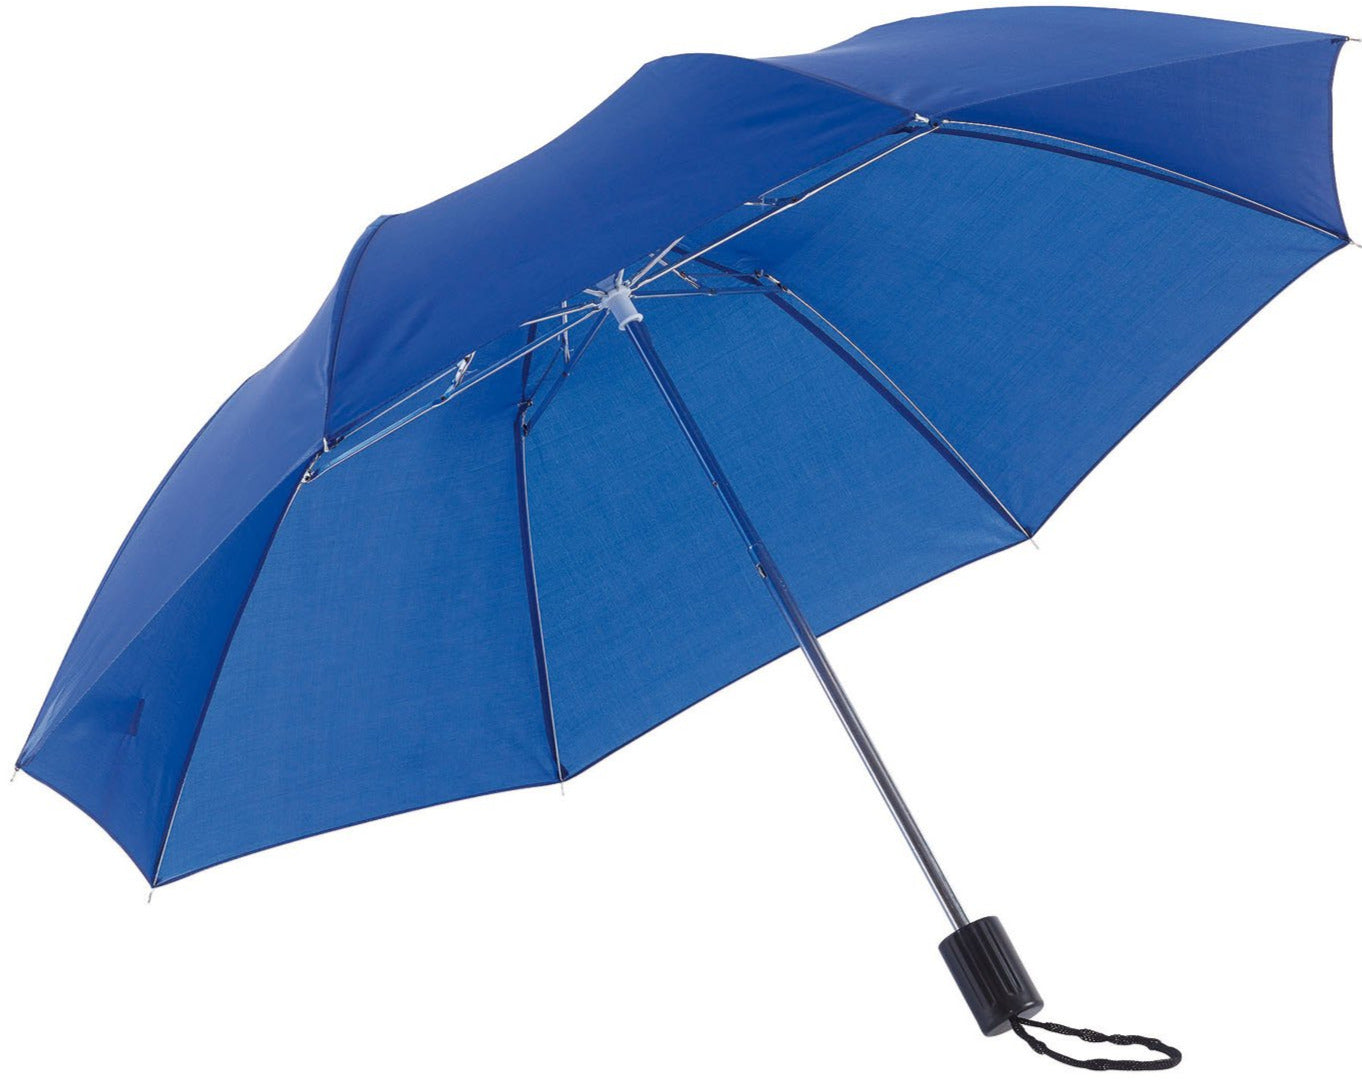 Μπλε ρουά ομπρέλα βροχής, παιδική, σπαστή, απλή, και σε πολλά χρώματα.